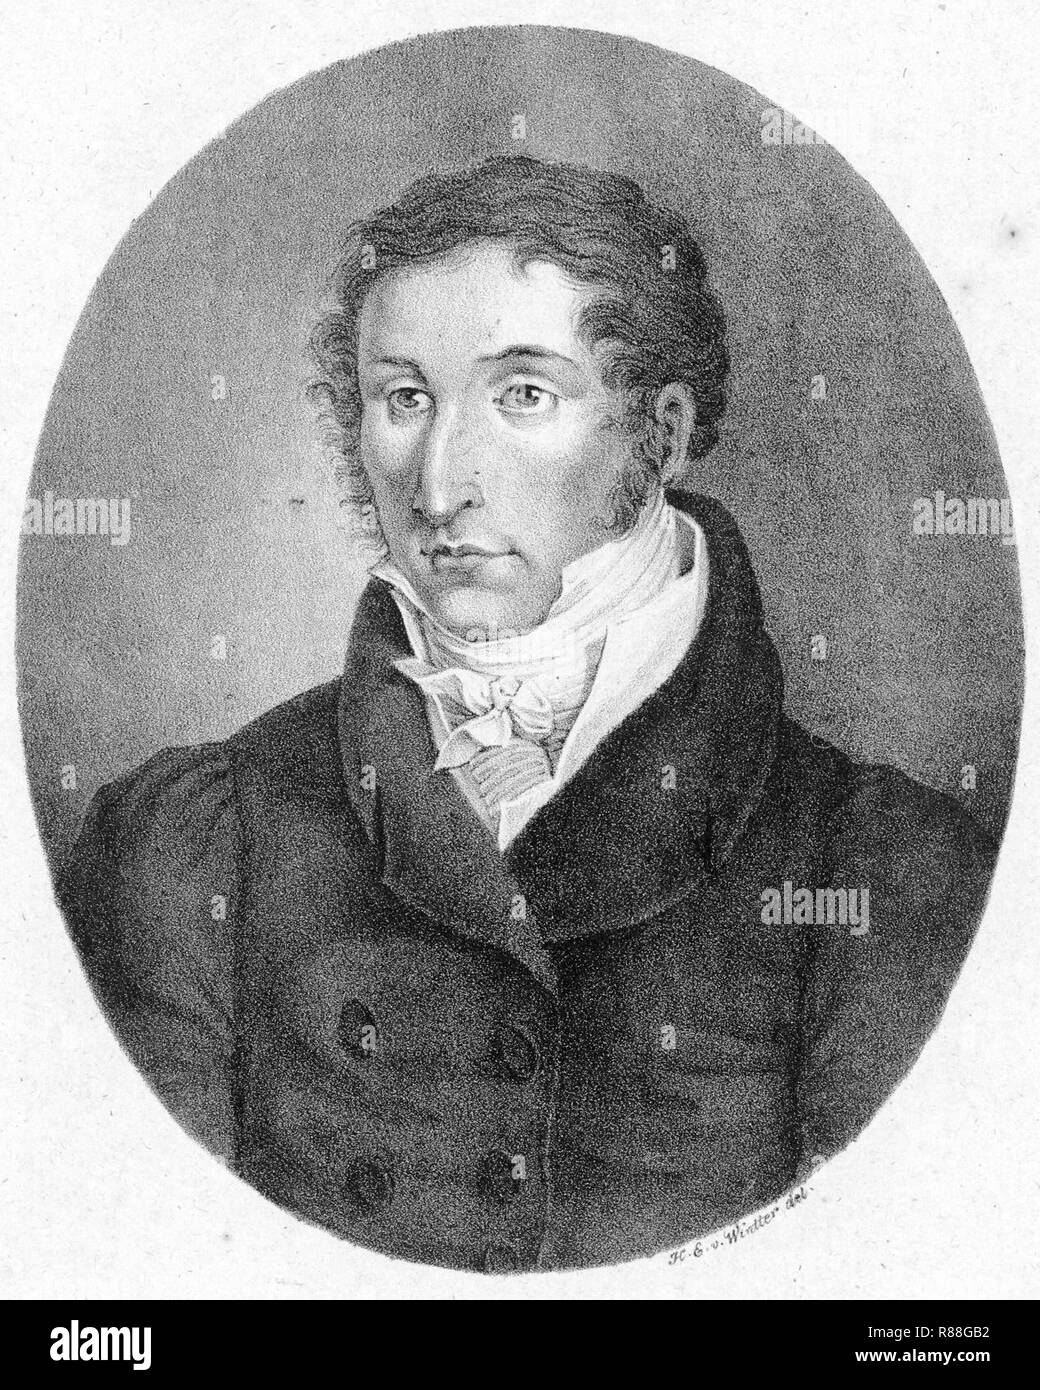 Carl Maria von Weber by Heinrich Eduard Winter. Stock Photo